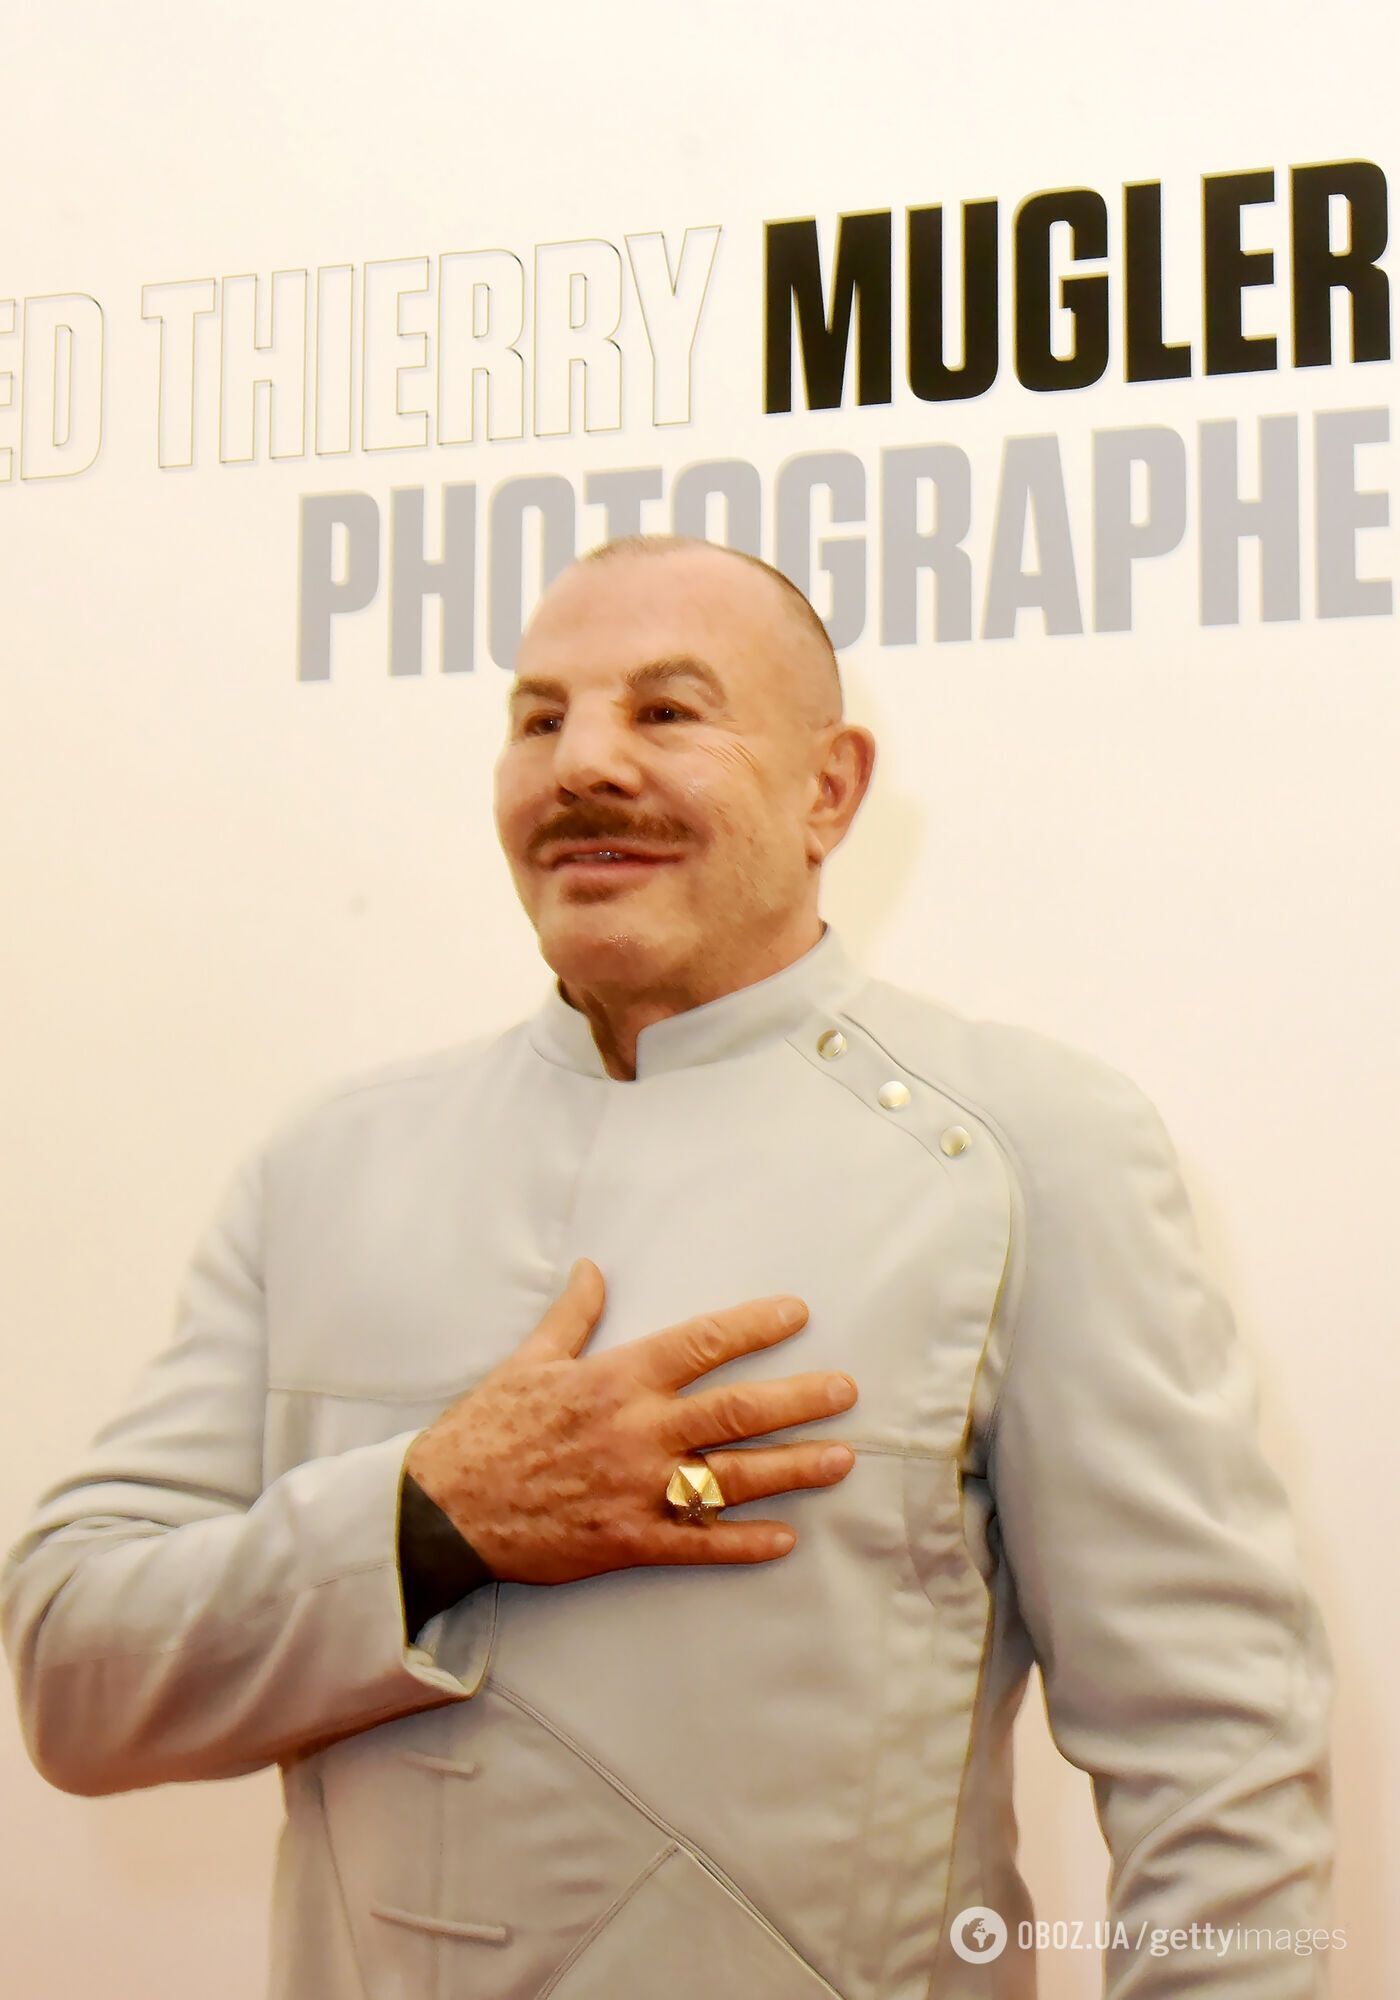 Мюглер на своей выставке фотографий. Париж, Франция, 7 ноября 2019 года